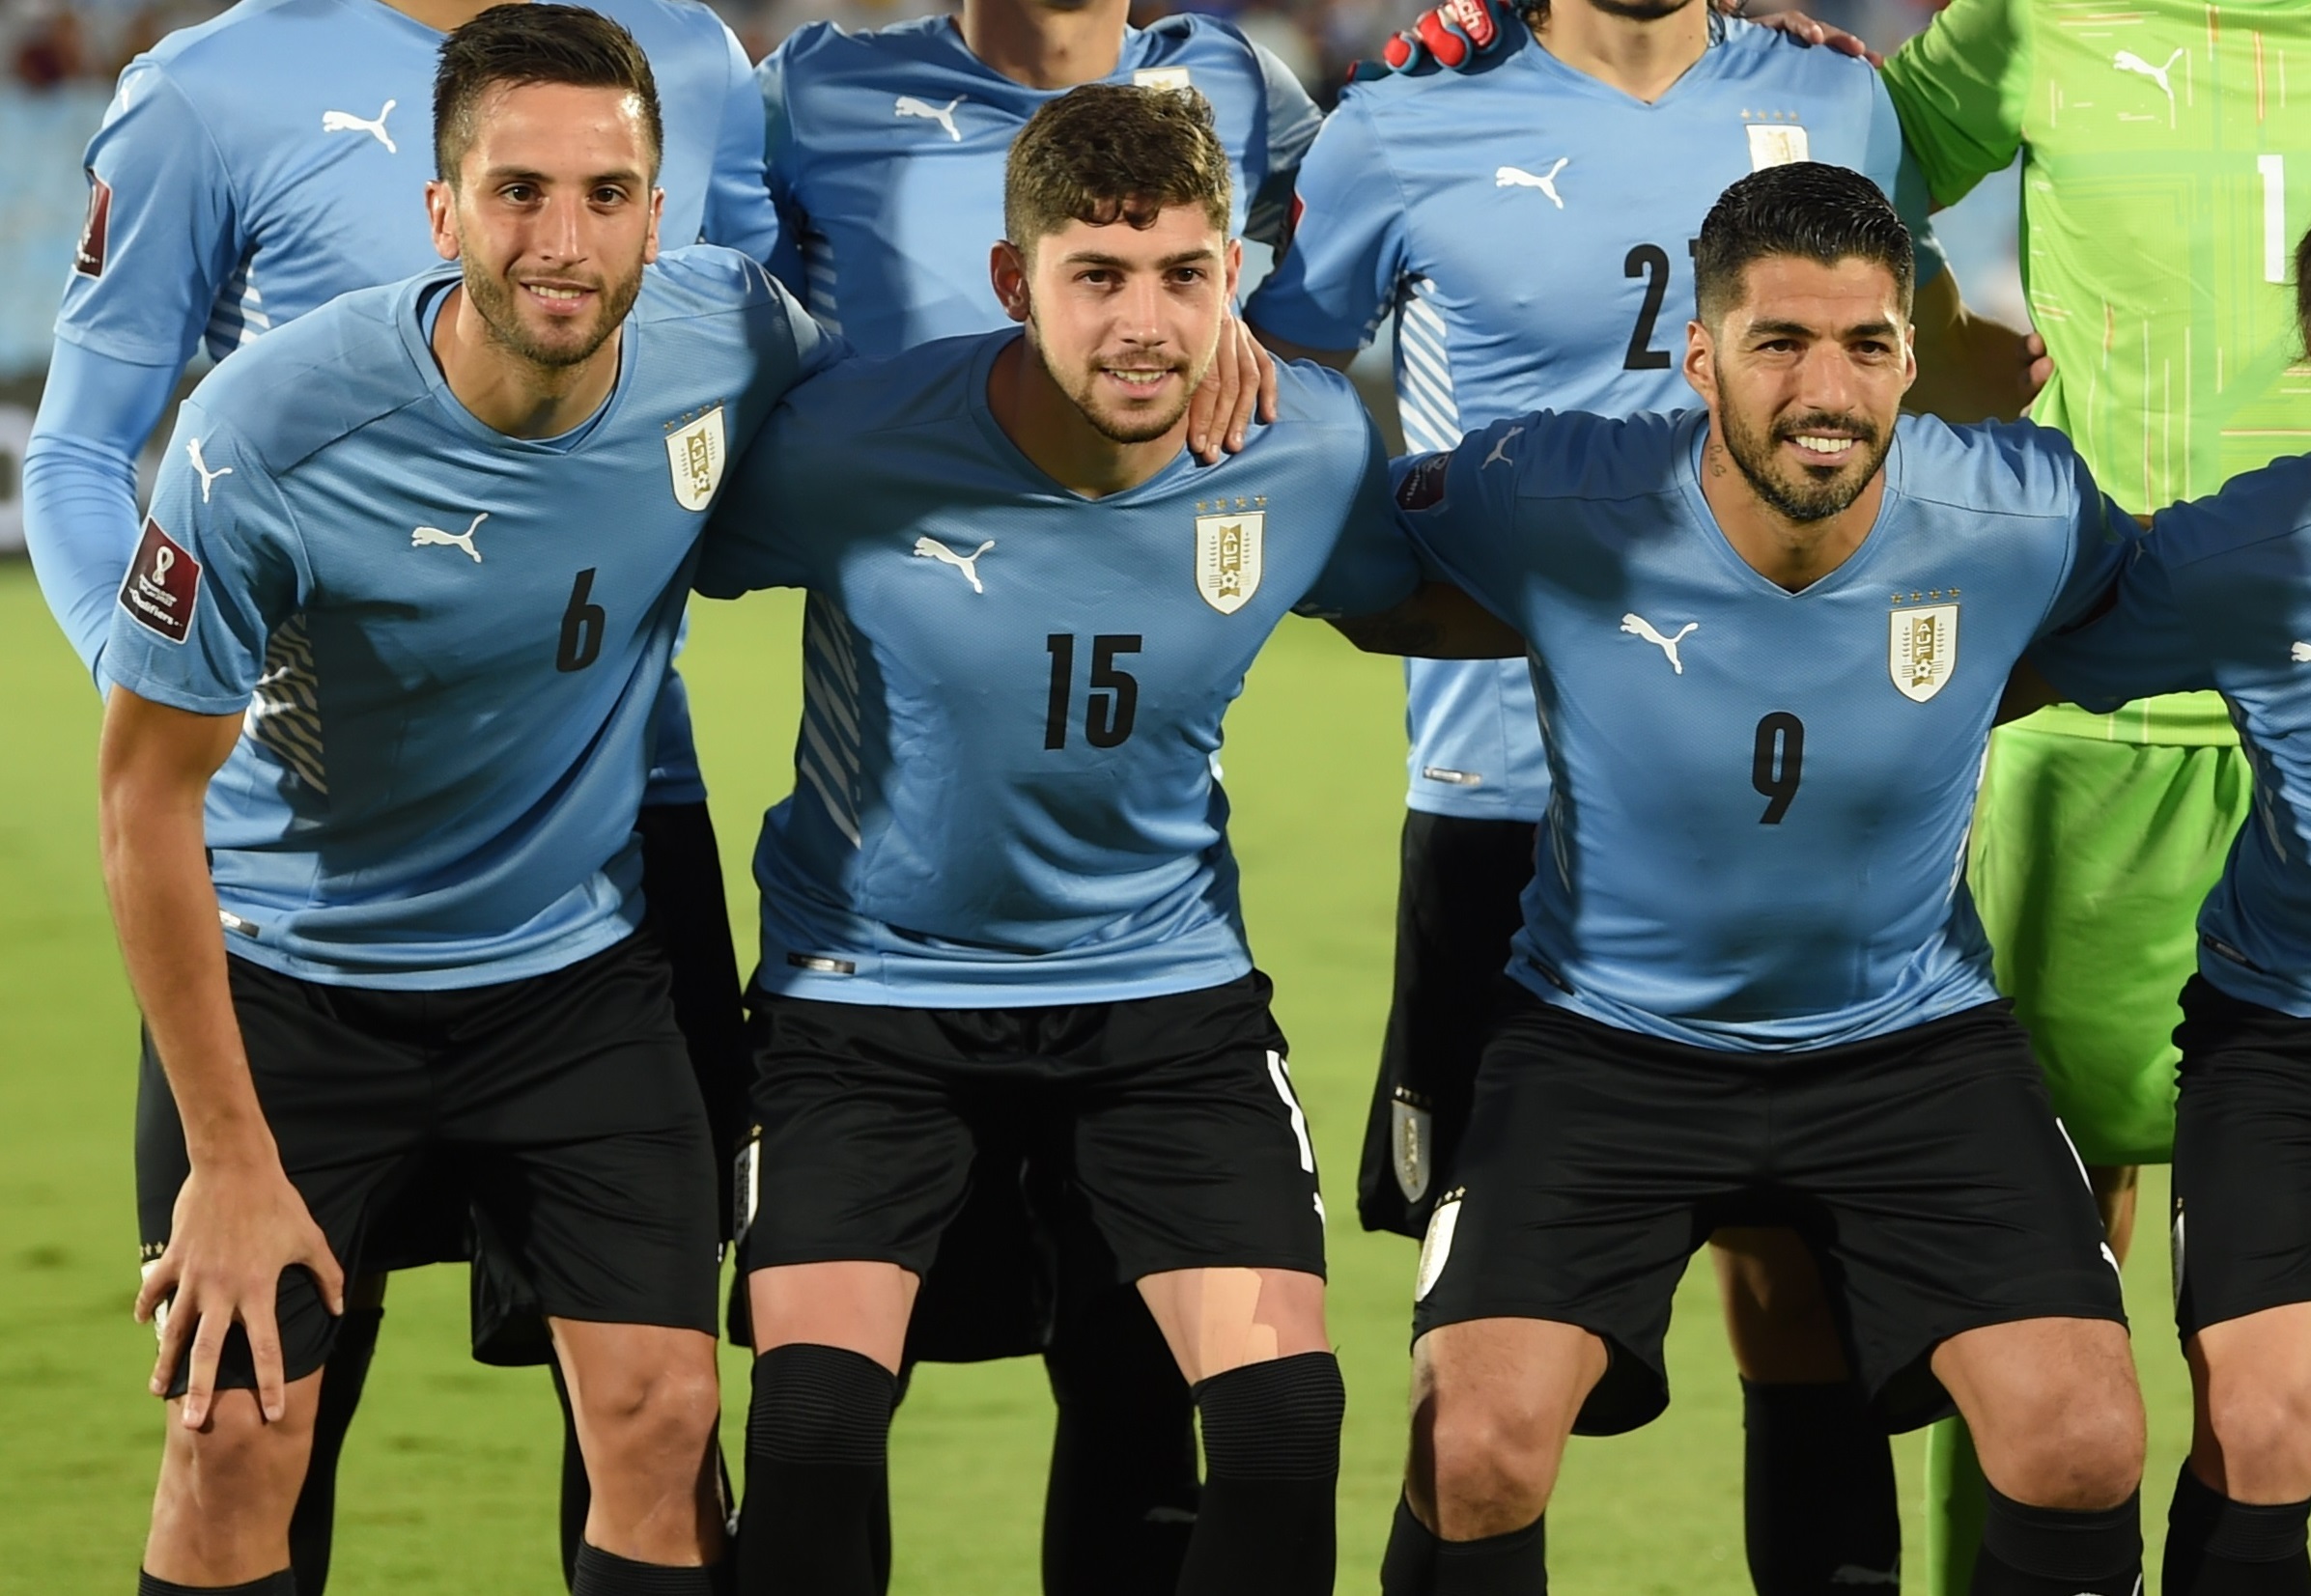 El fútbol uruguayo entre los más exportadores del mundo, según